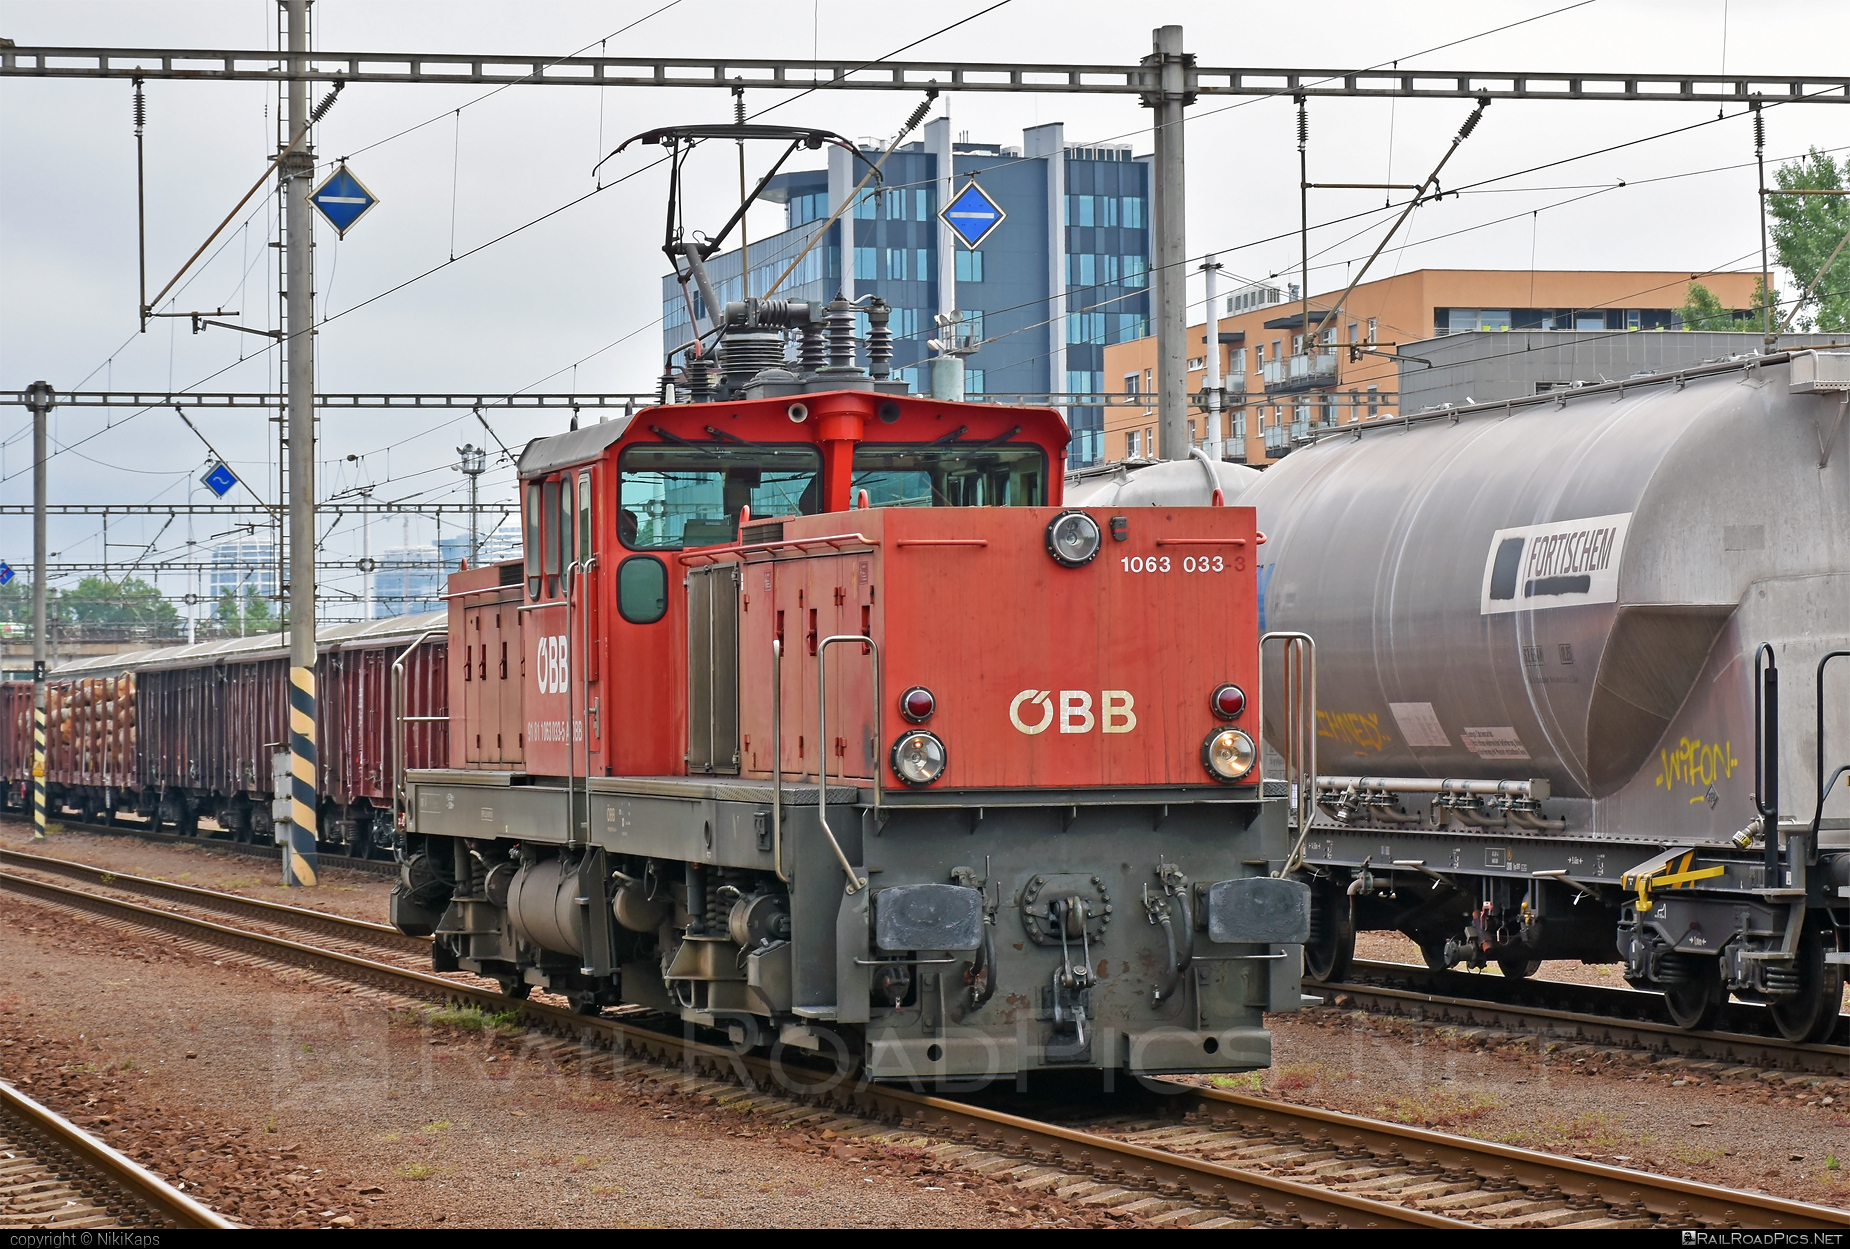 SGP 1063 - 1063 033 operated by Rail Cargo Austria AG #obb #obb1063 #obbClass1063 #osterreichischebundesbahnen #rcw #sgp #sgp1063 #simmeringgrazpauker